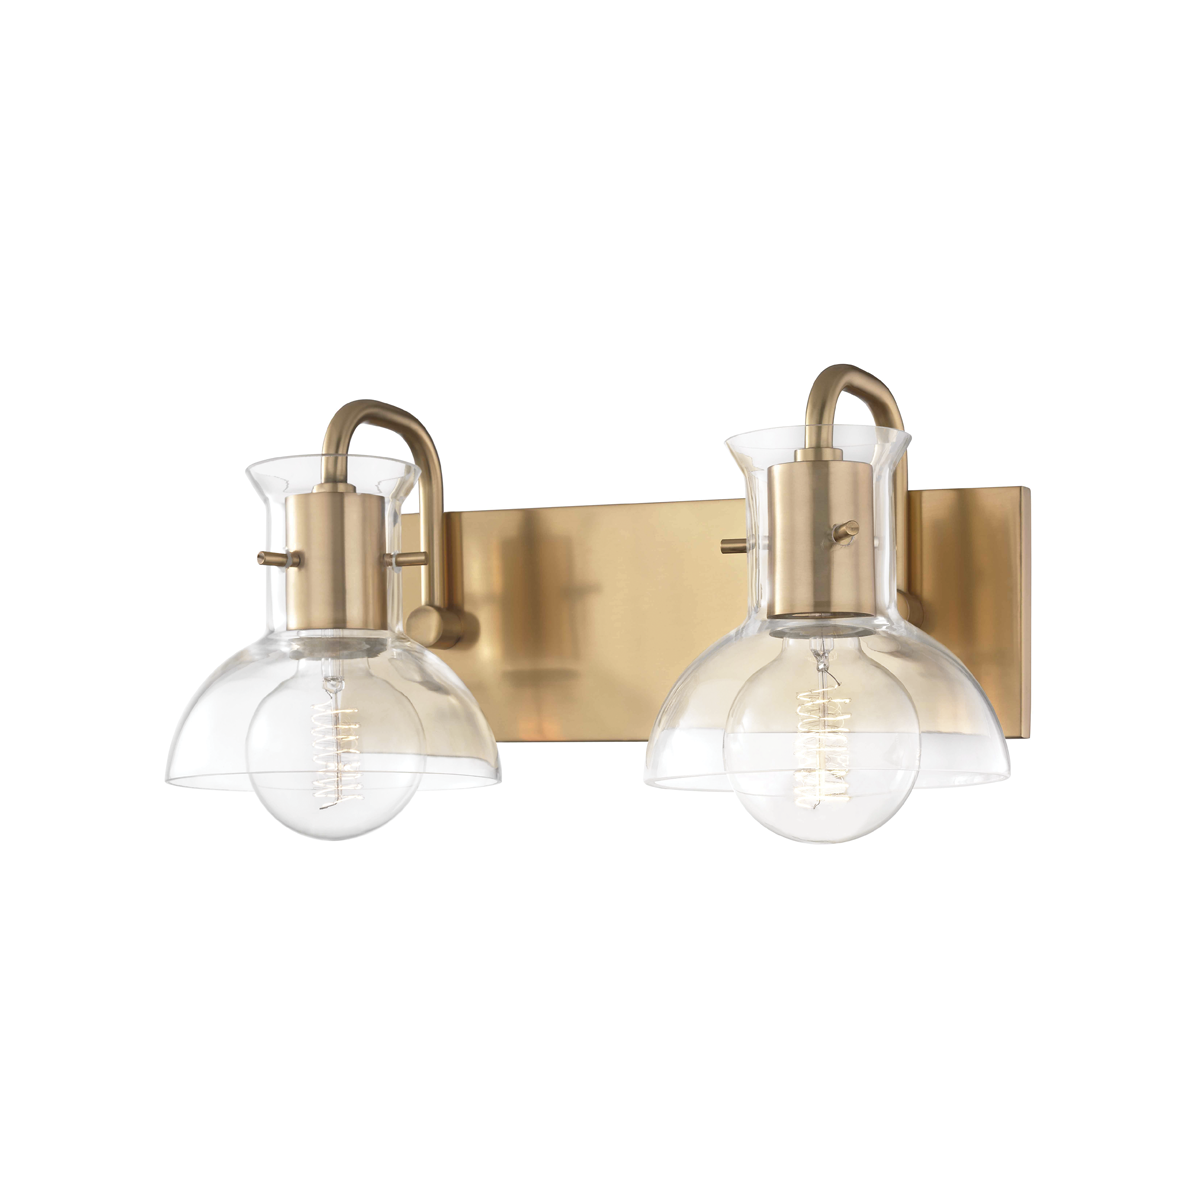 Hudson Valley Lighting Riley 2 Light Bath Bracket H111302 Wall Light Fixtures Mitzi Aged Brass  